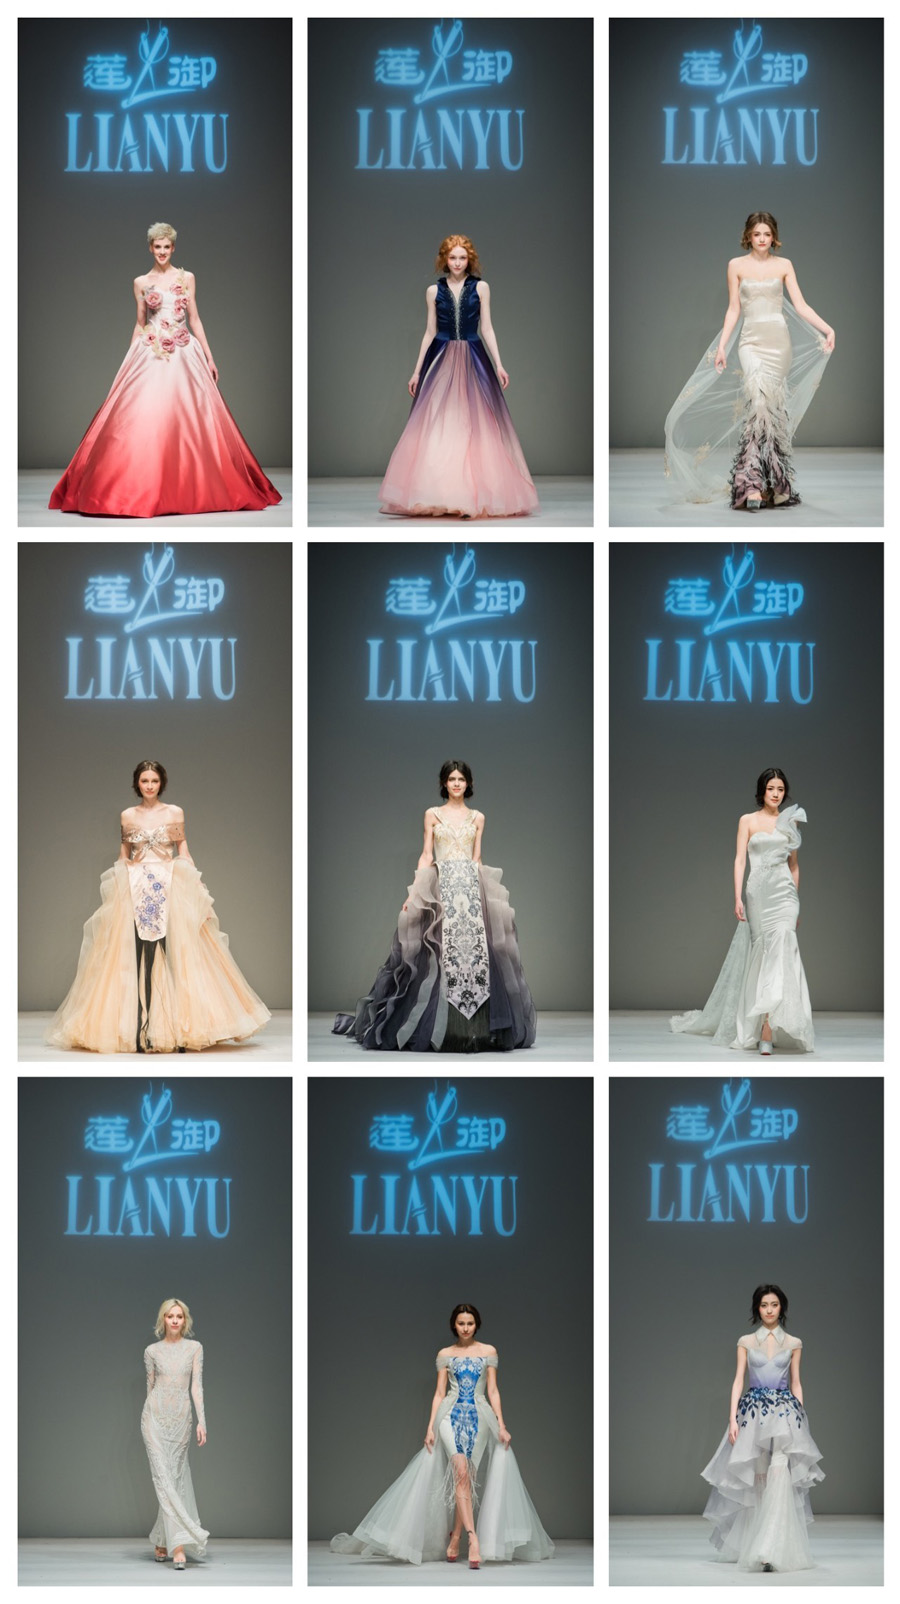 中國國際時裝周“蓮·禦”婚紗禮服首秀專場發佈在京亮相